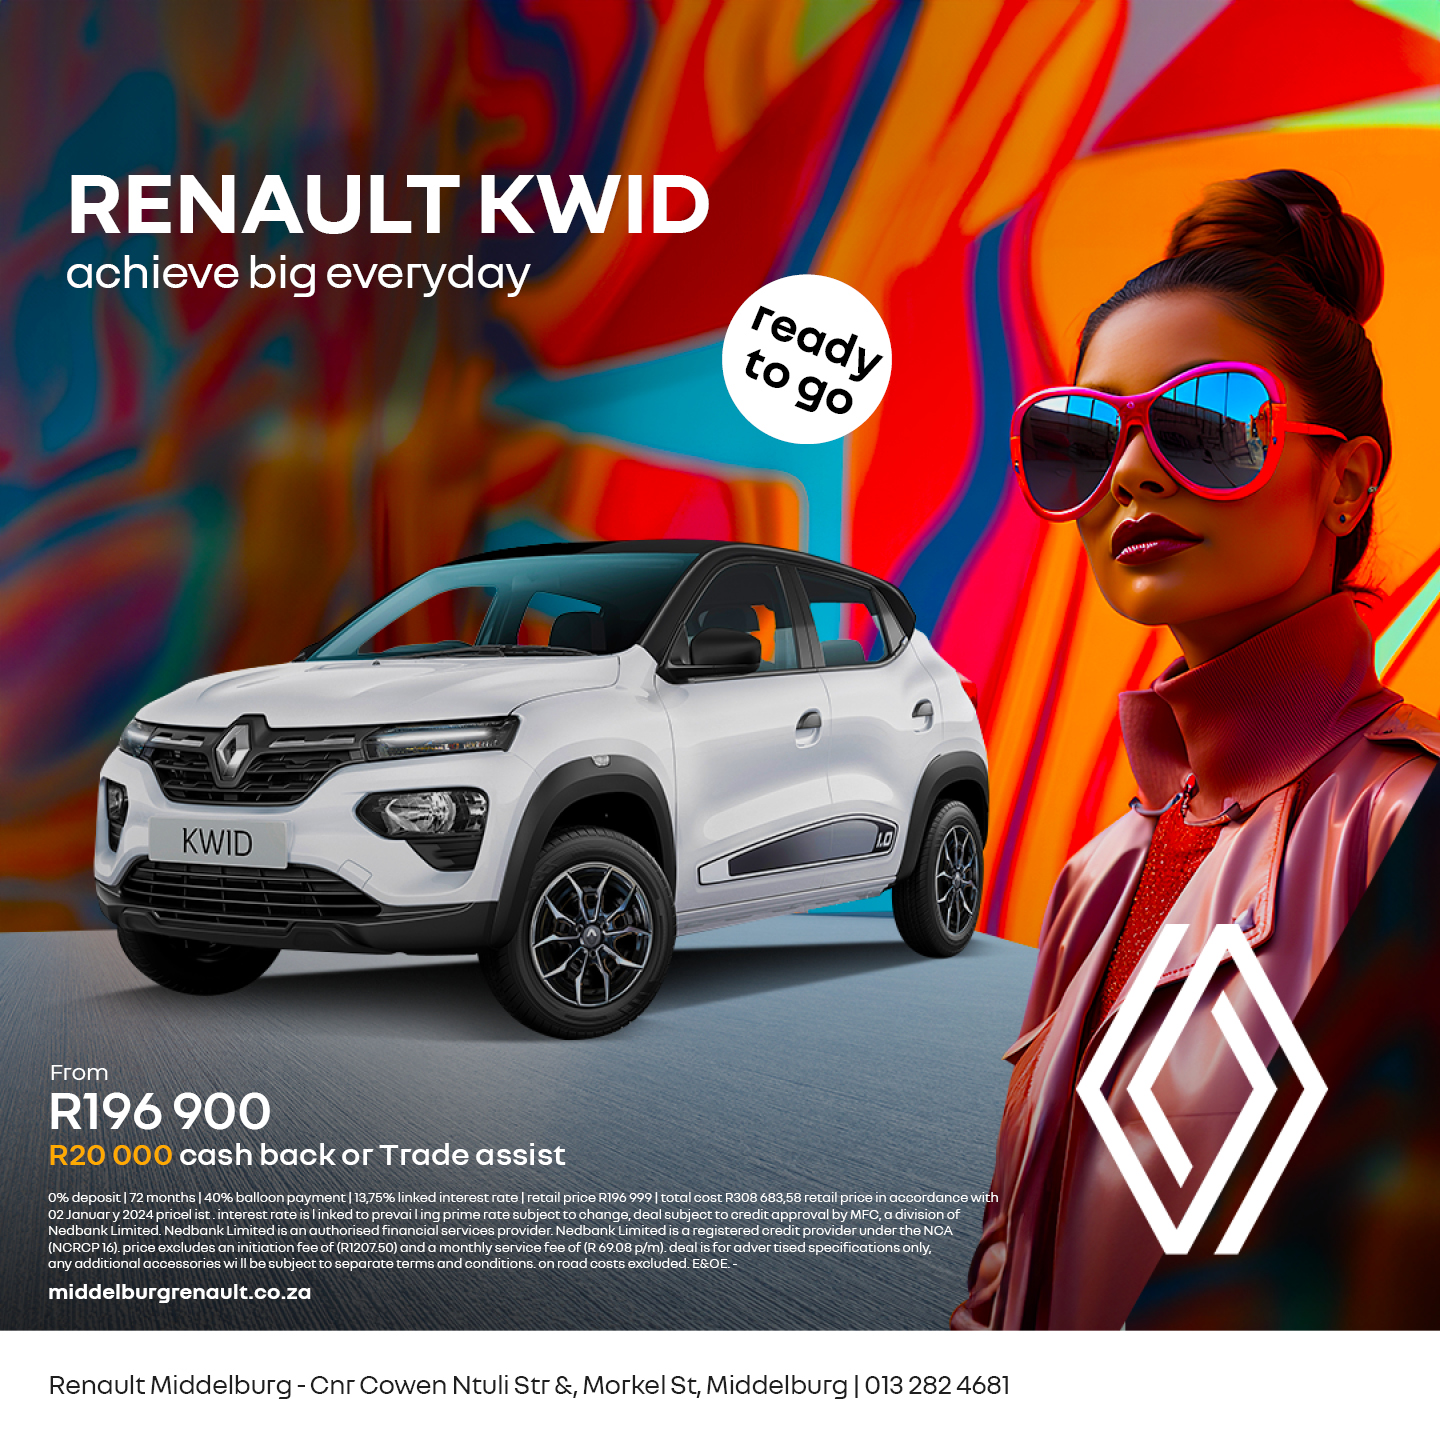 Renault KWID image from 